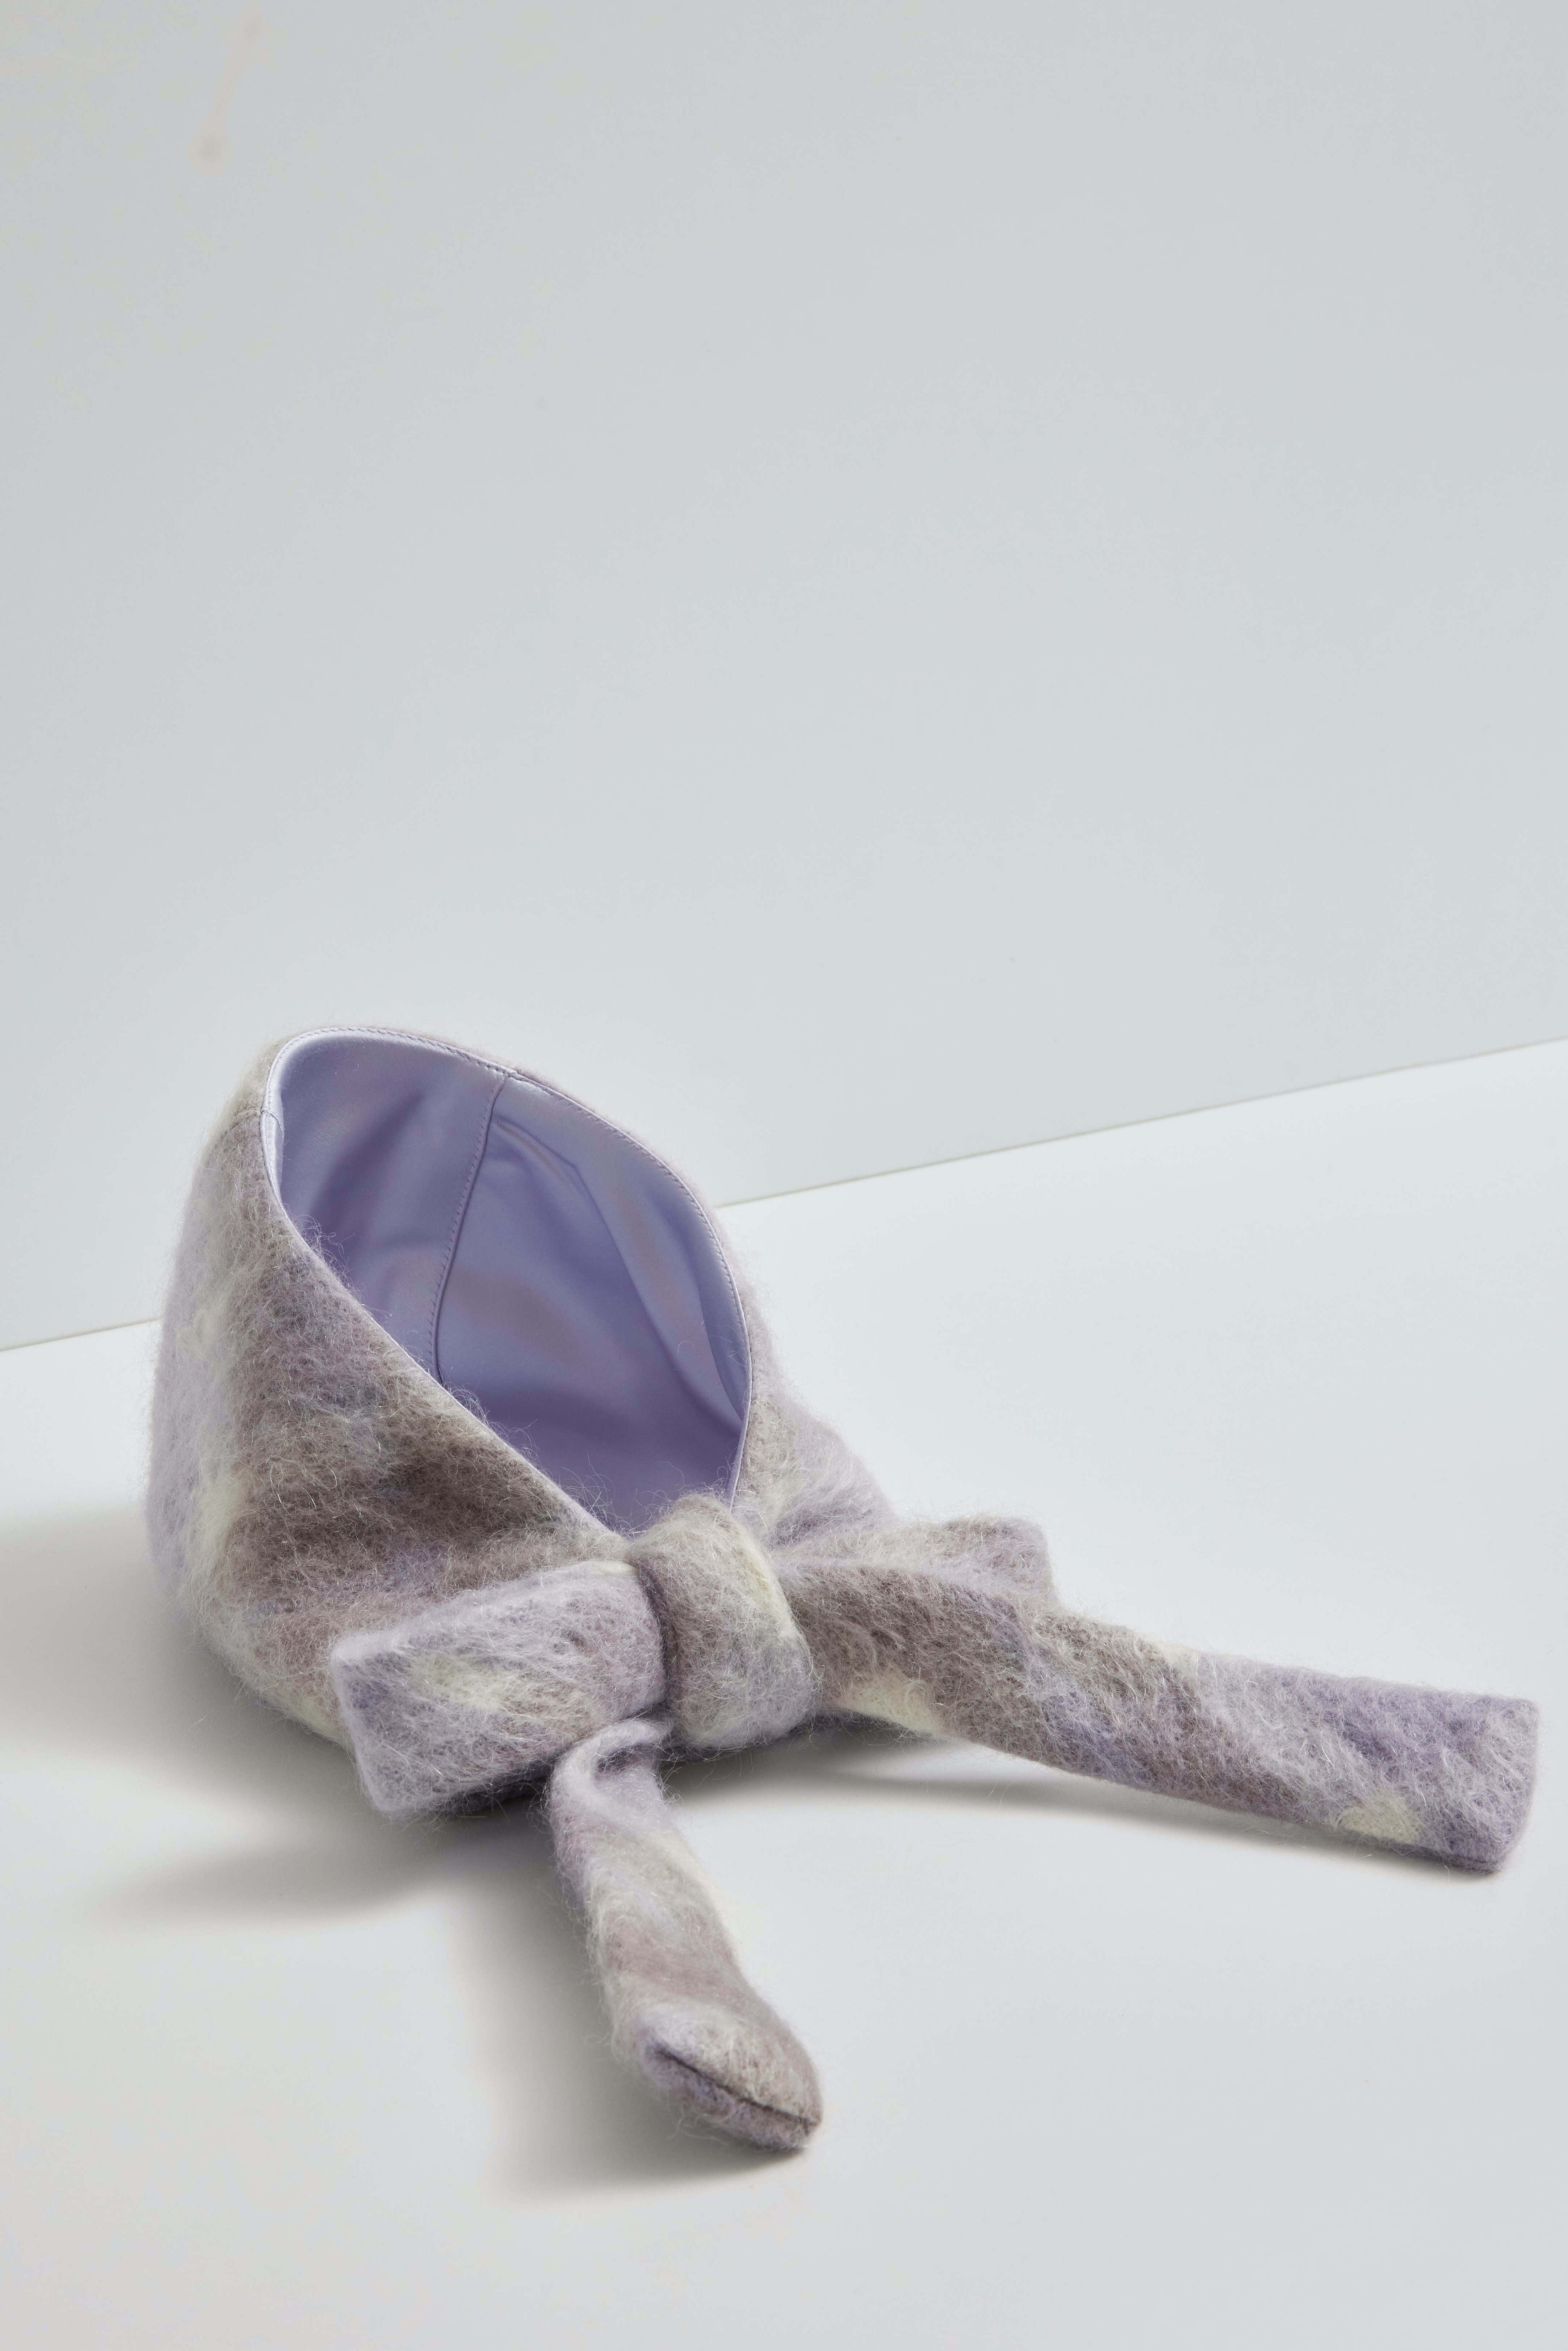 Shepherd's daughter bonnet - Lilac plaid mohair